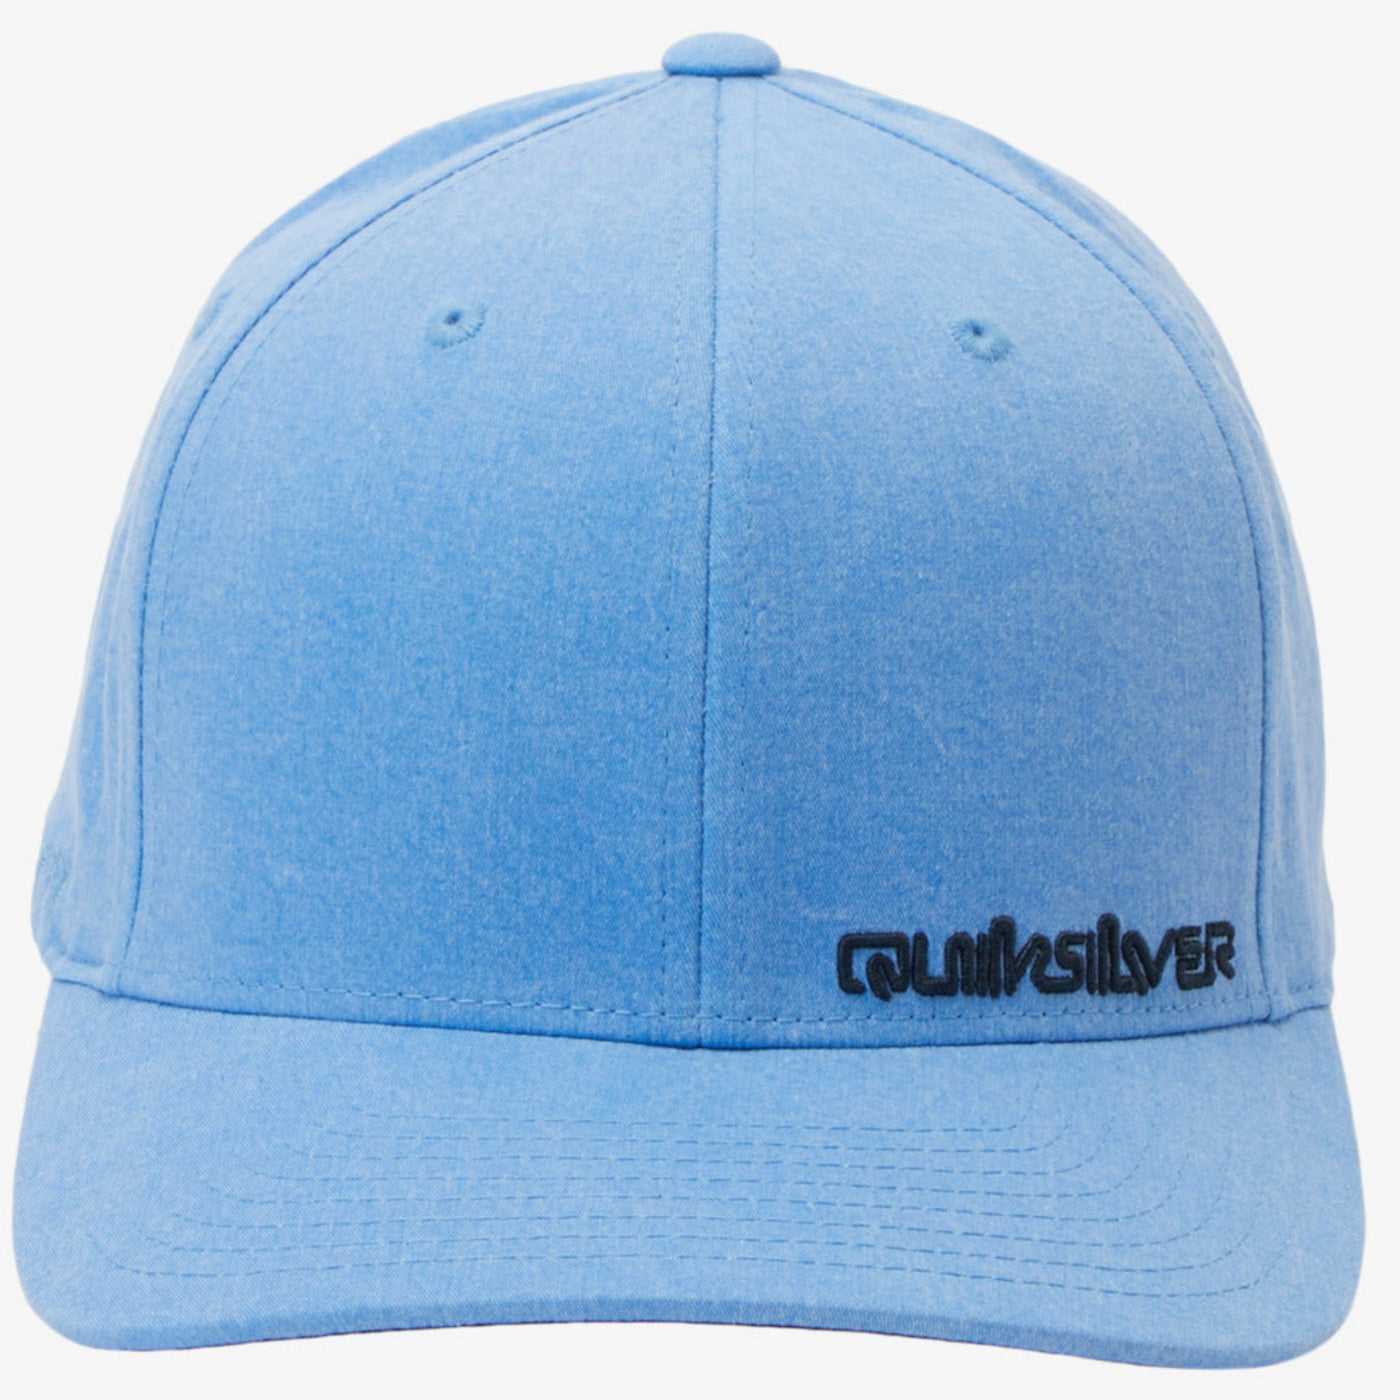 Quiksilver Men's Sidestay Flexfit Cap - Azure Blue